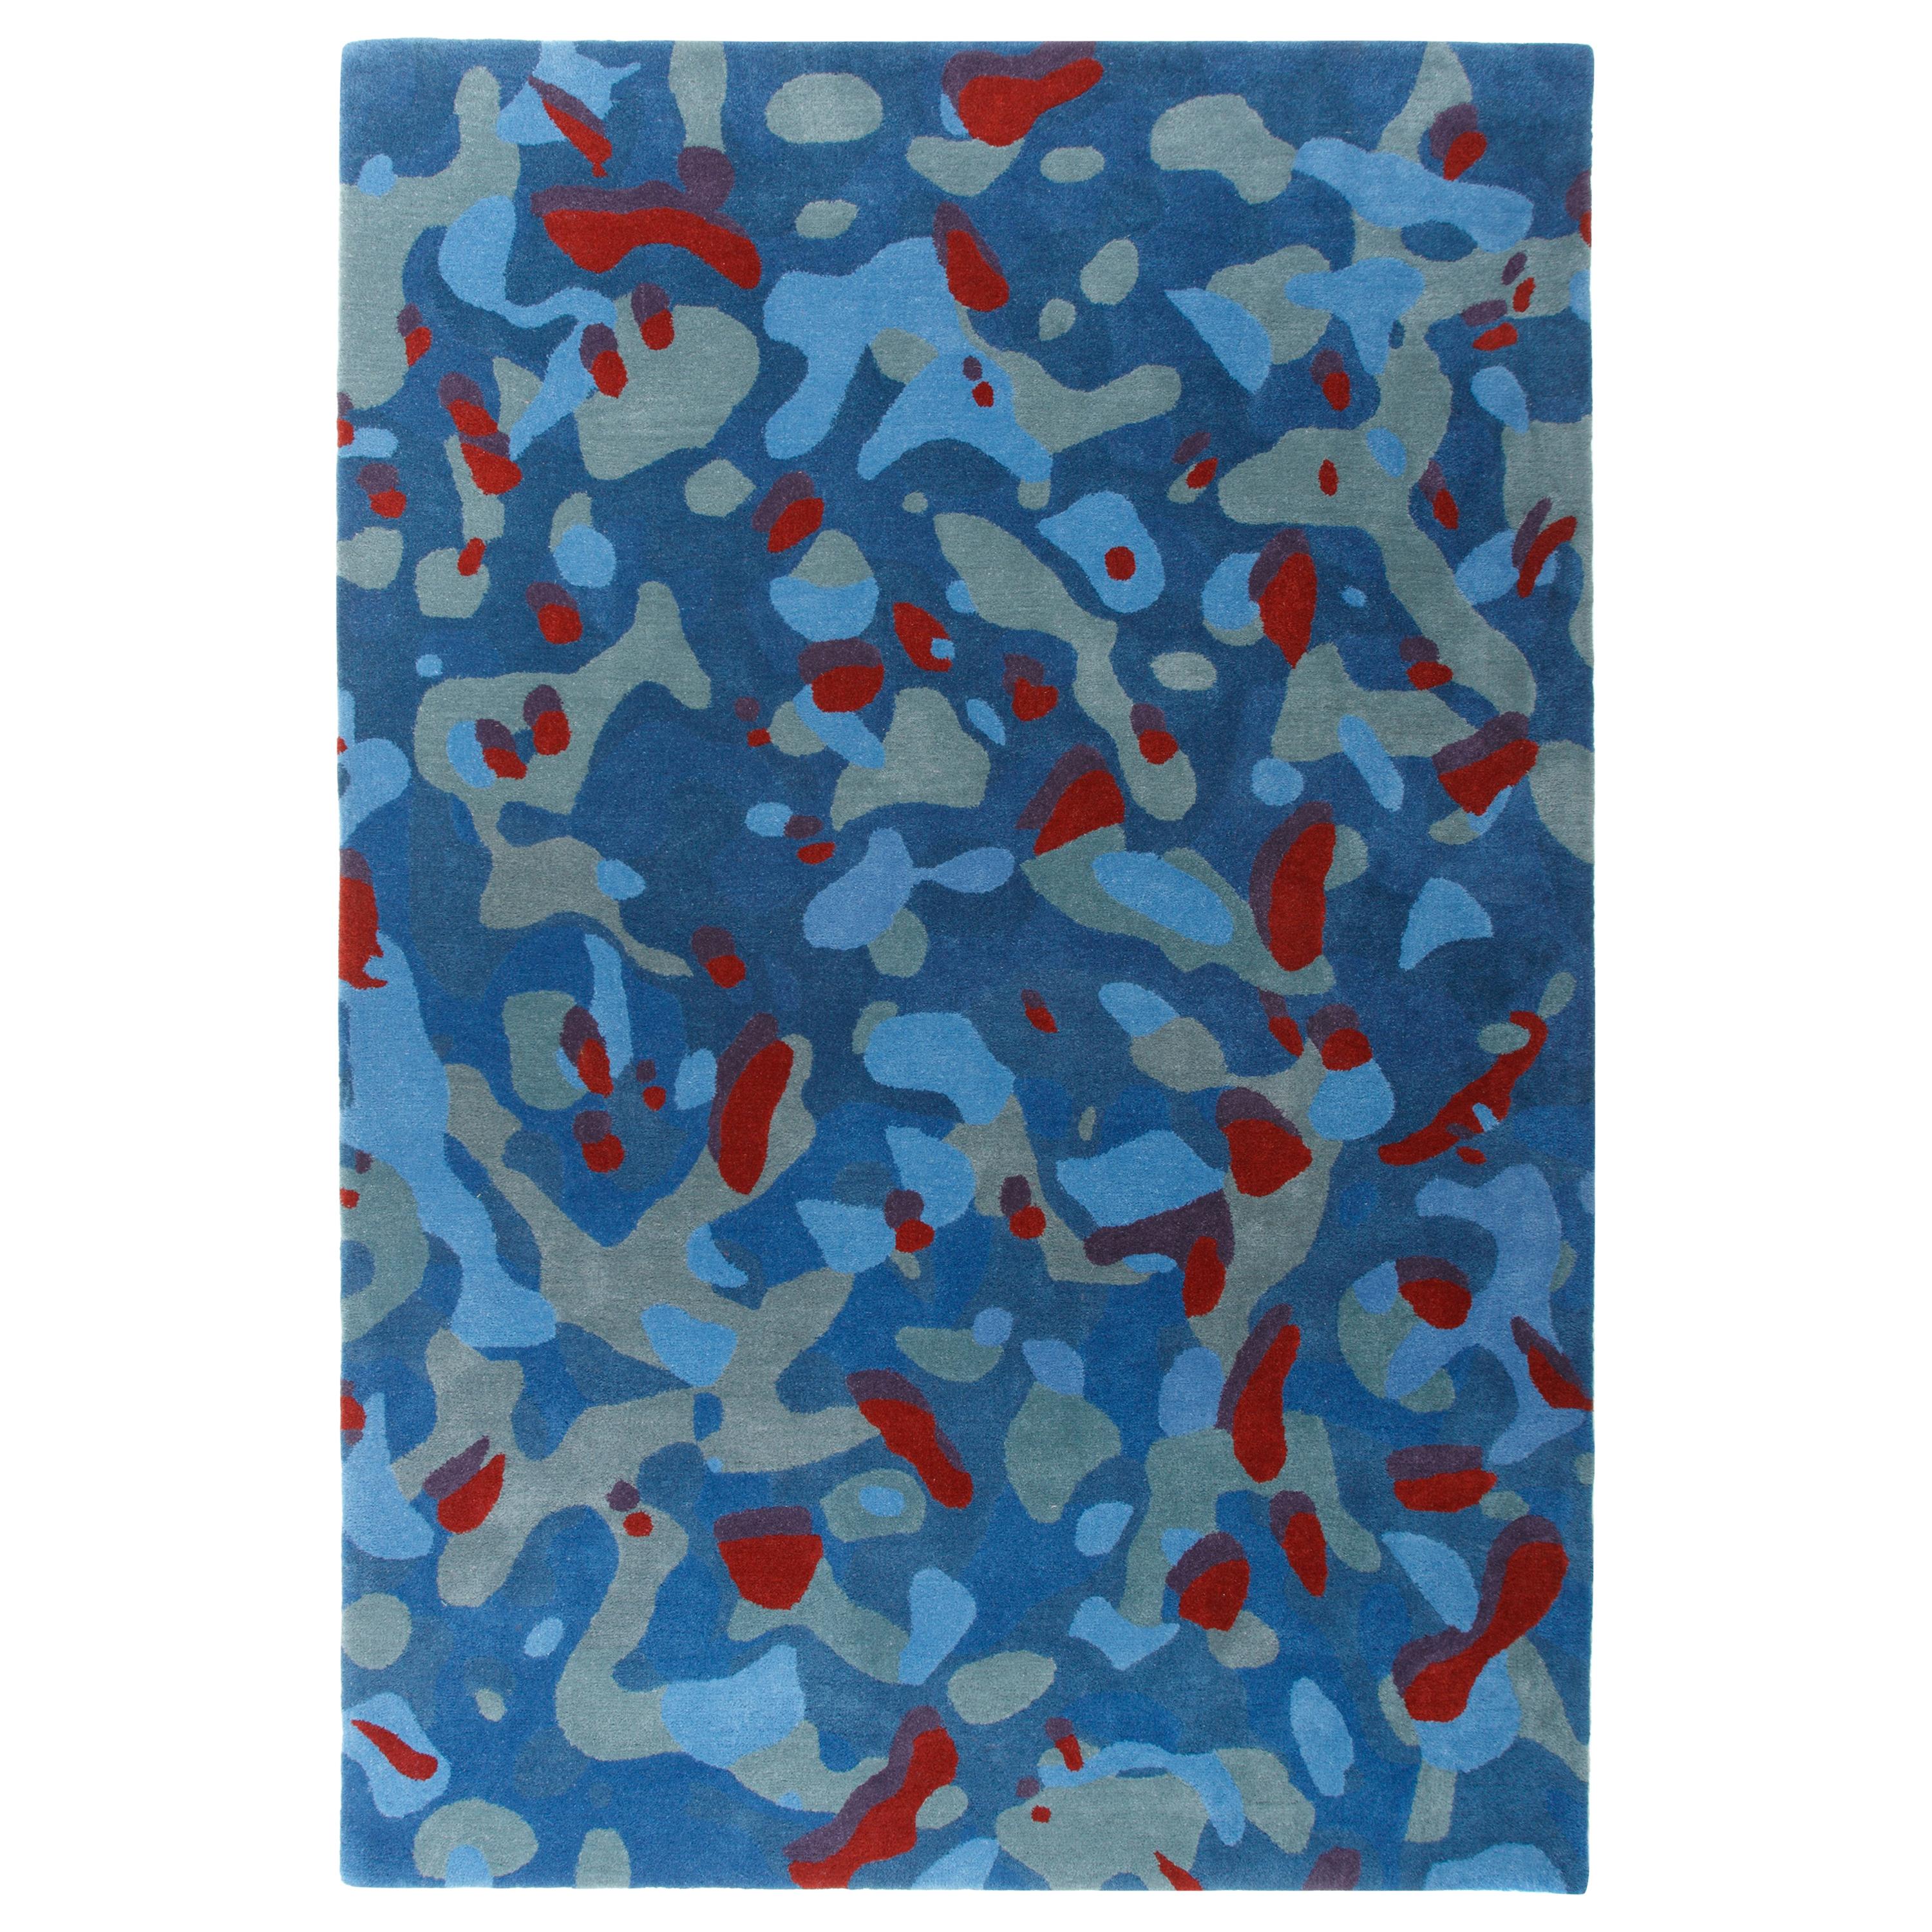 Camouflage Makro Blau:: handgetuftet:: Wolle und Viskose:: Alberto Artesani